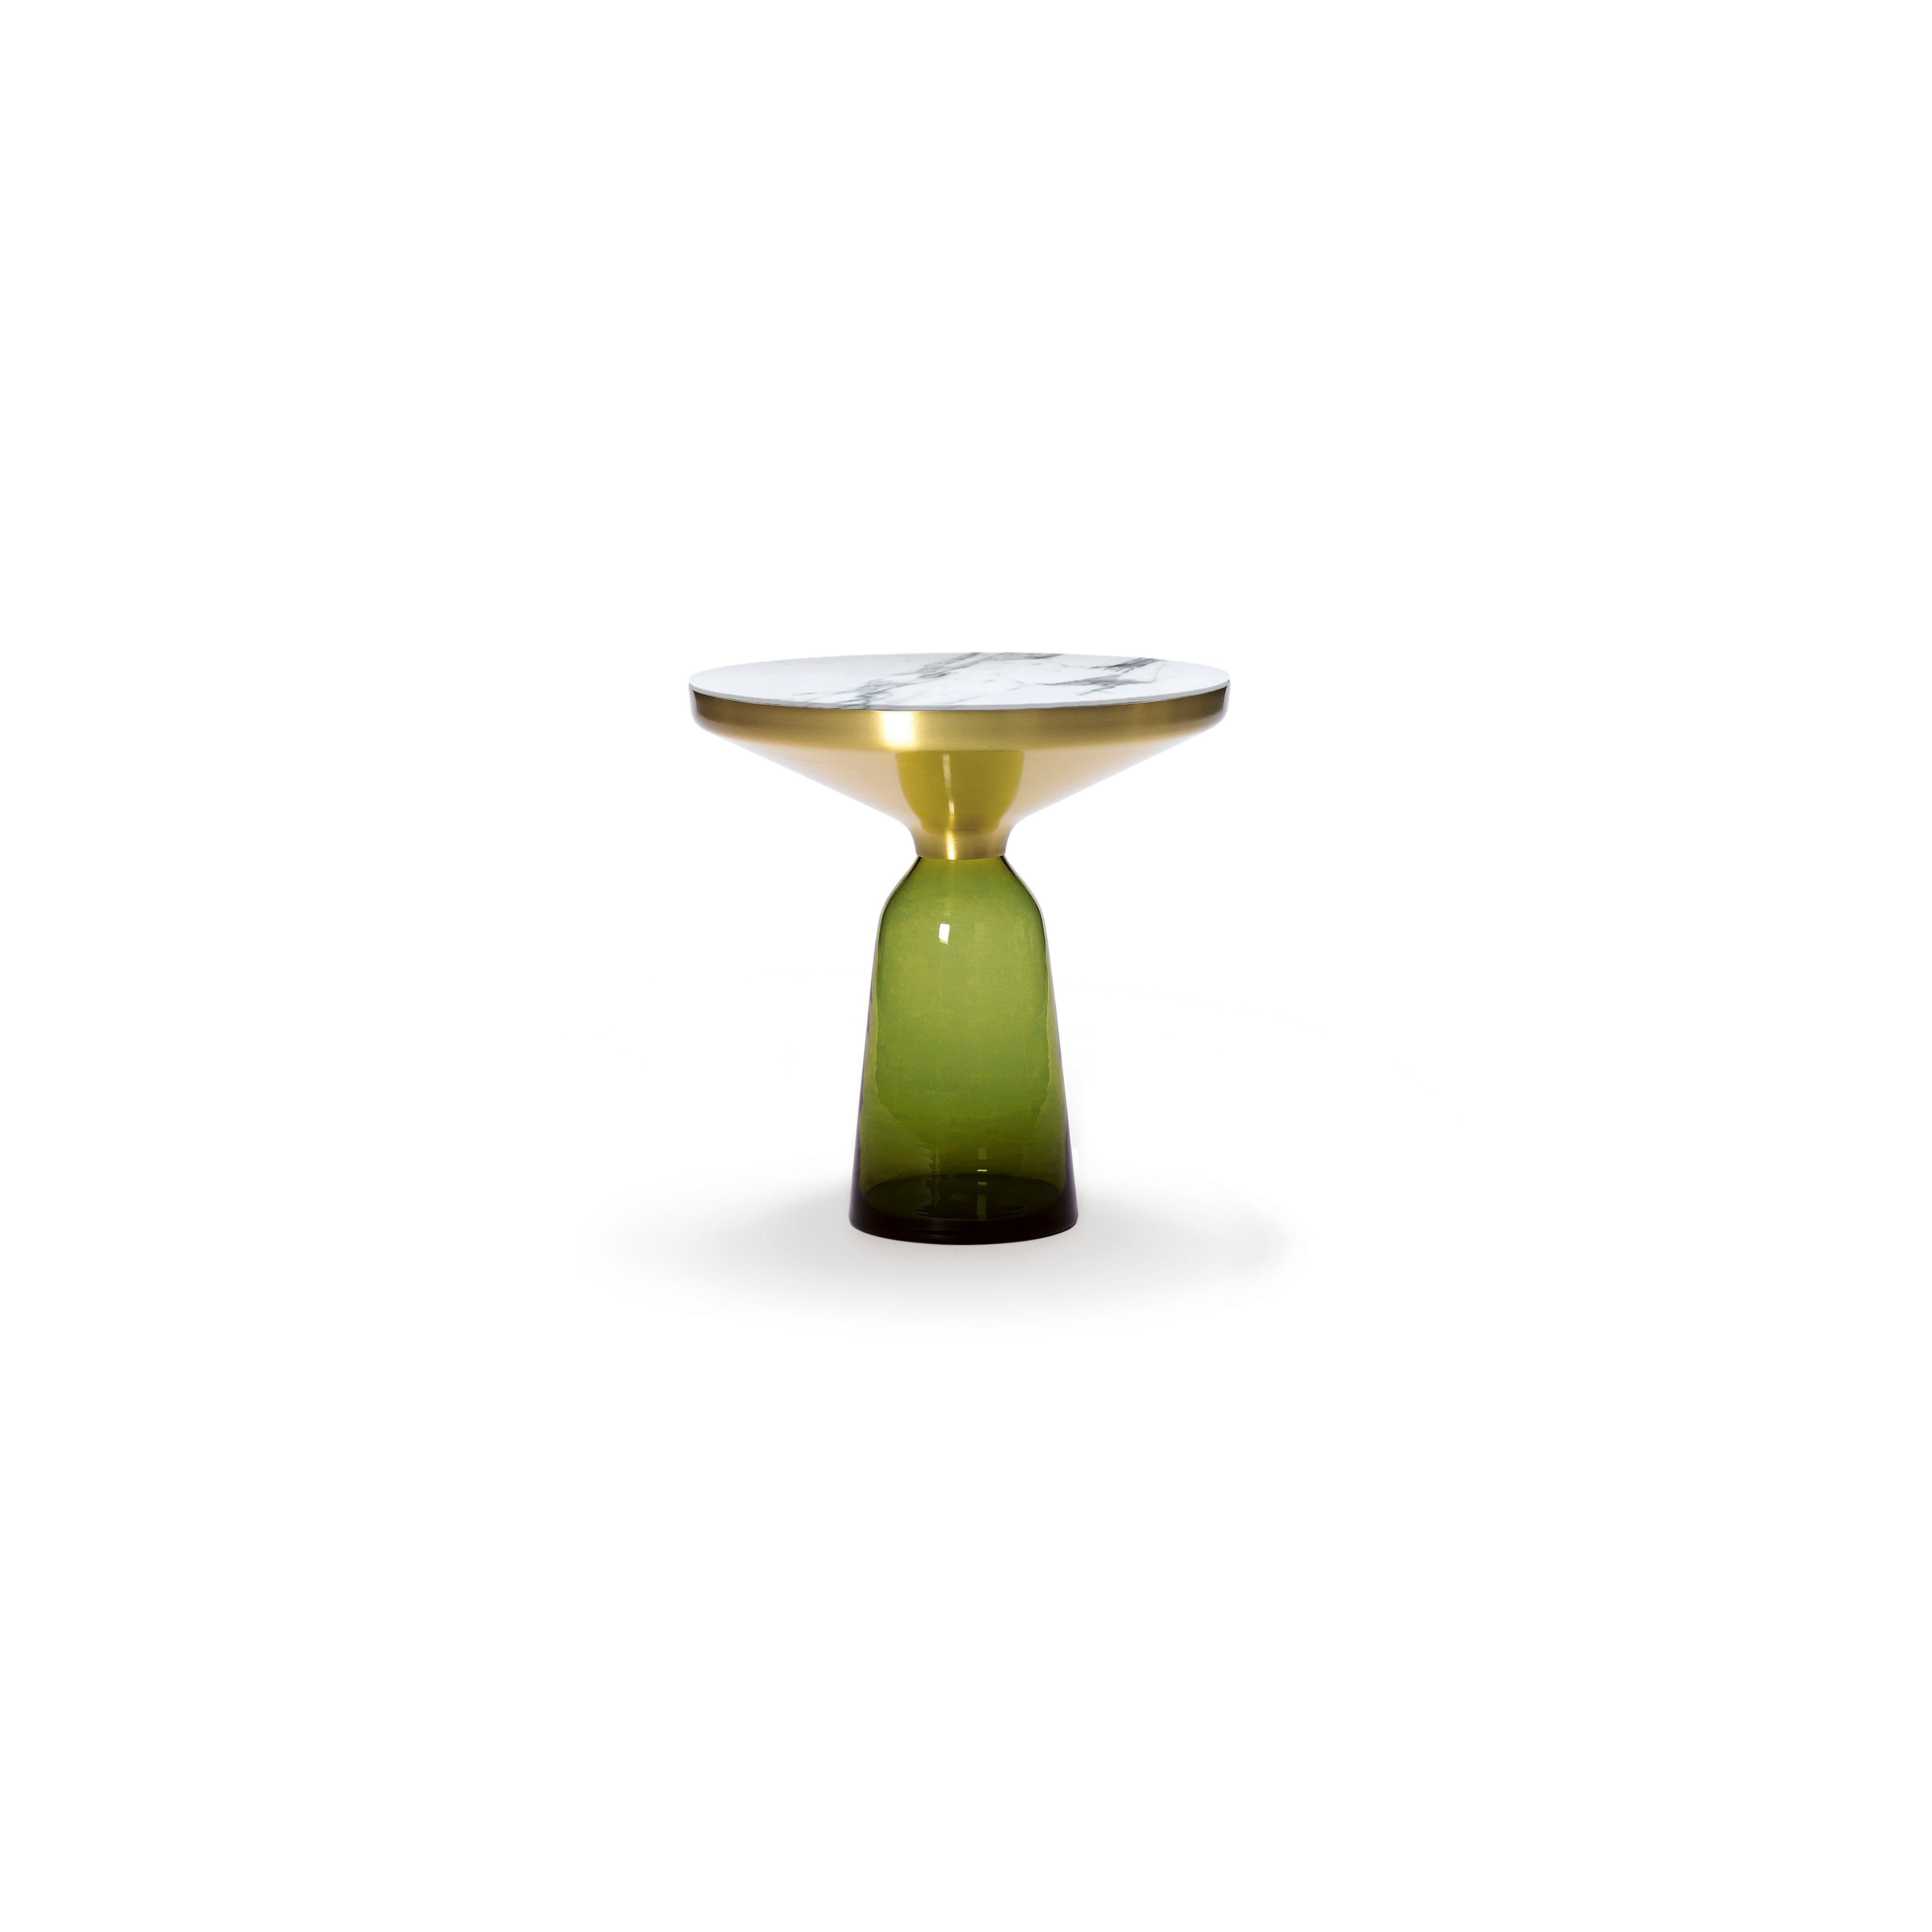 Un classique moderne en miniature : la table cloche de Sebastian Herkner bouleverse nos habitudes de perception en utilisant le matériau léger et fragile qu'est le verre comme base pour un plateau métallique qui semble flotter au-dessus. Soufflée à